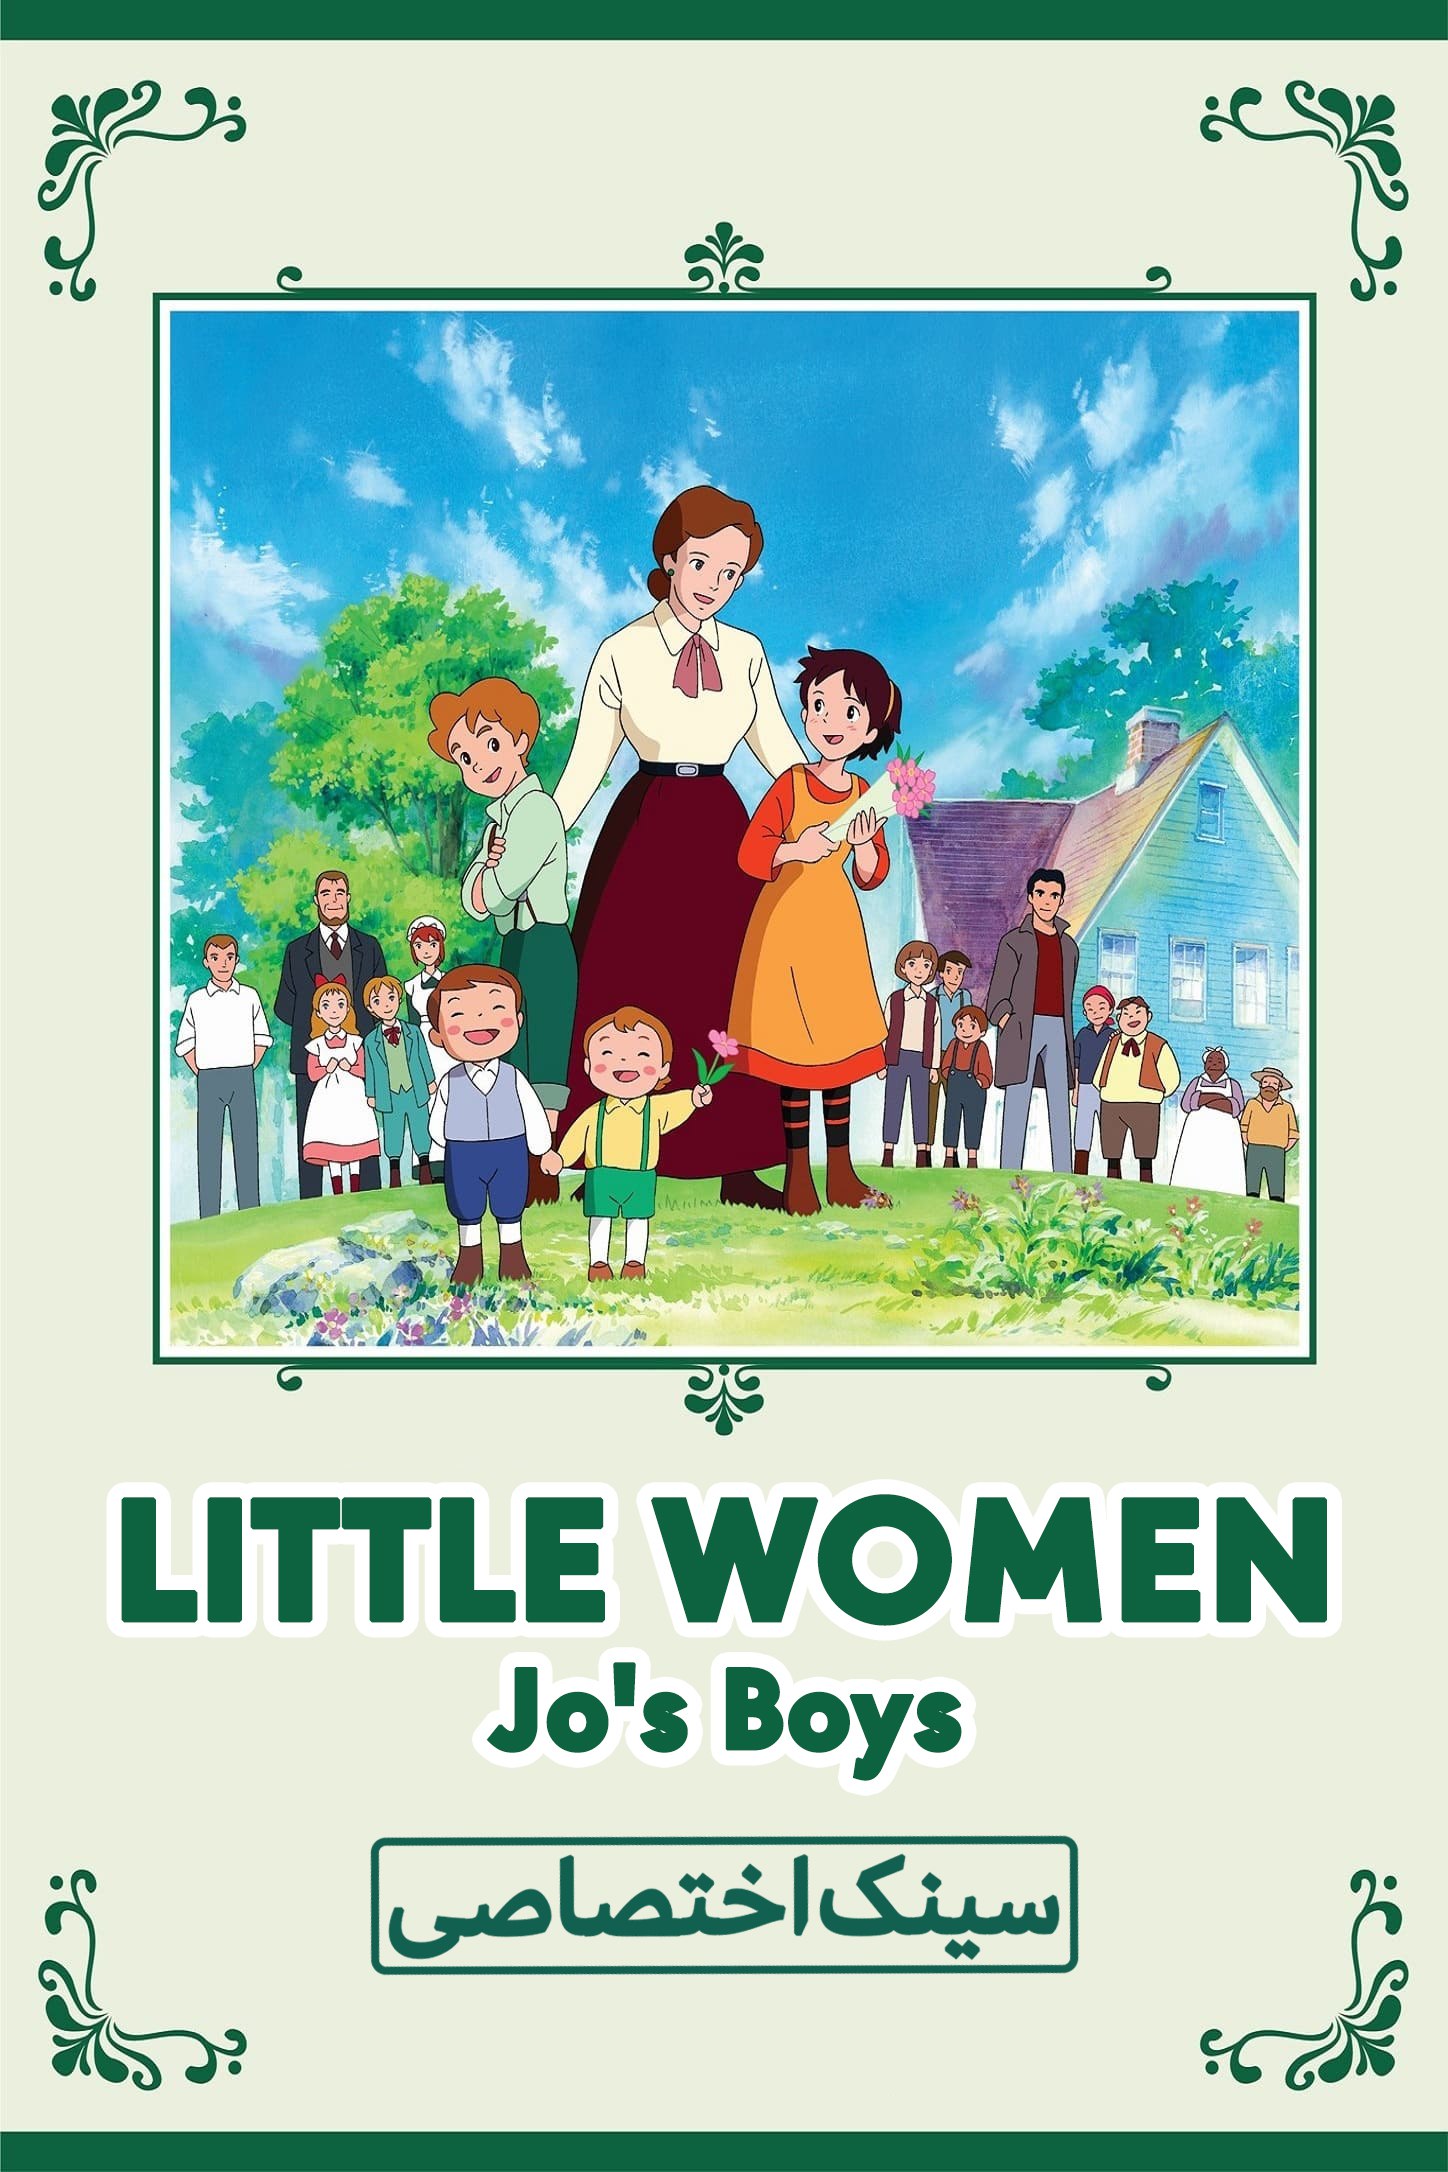 دانلود صوت دوبله سریال Little Women II: Jo’s Boys | زنان کوچک 2